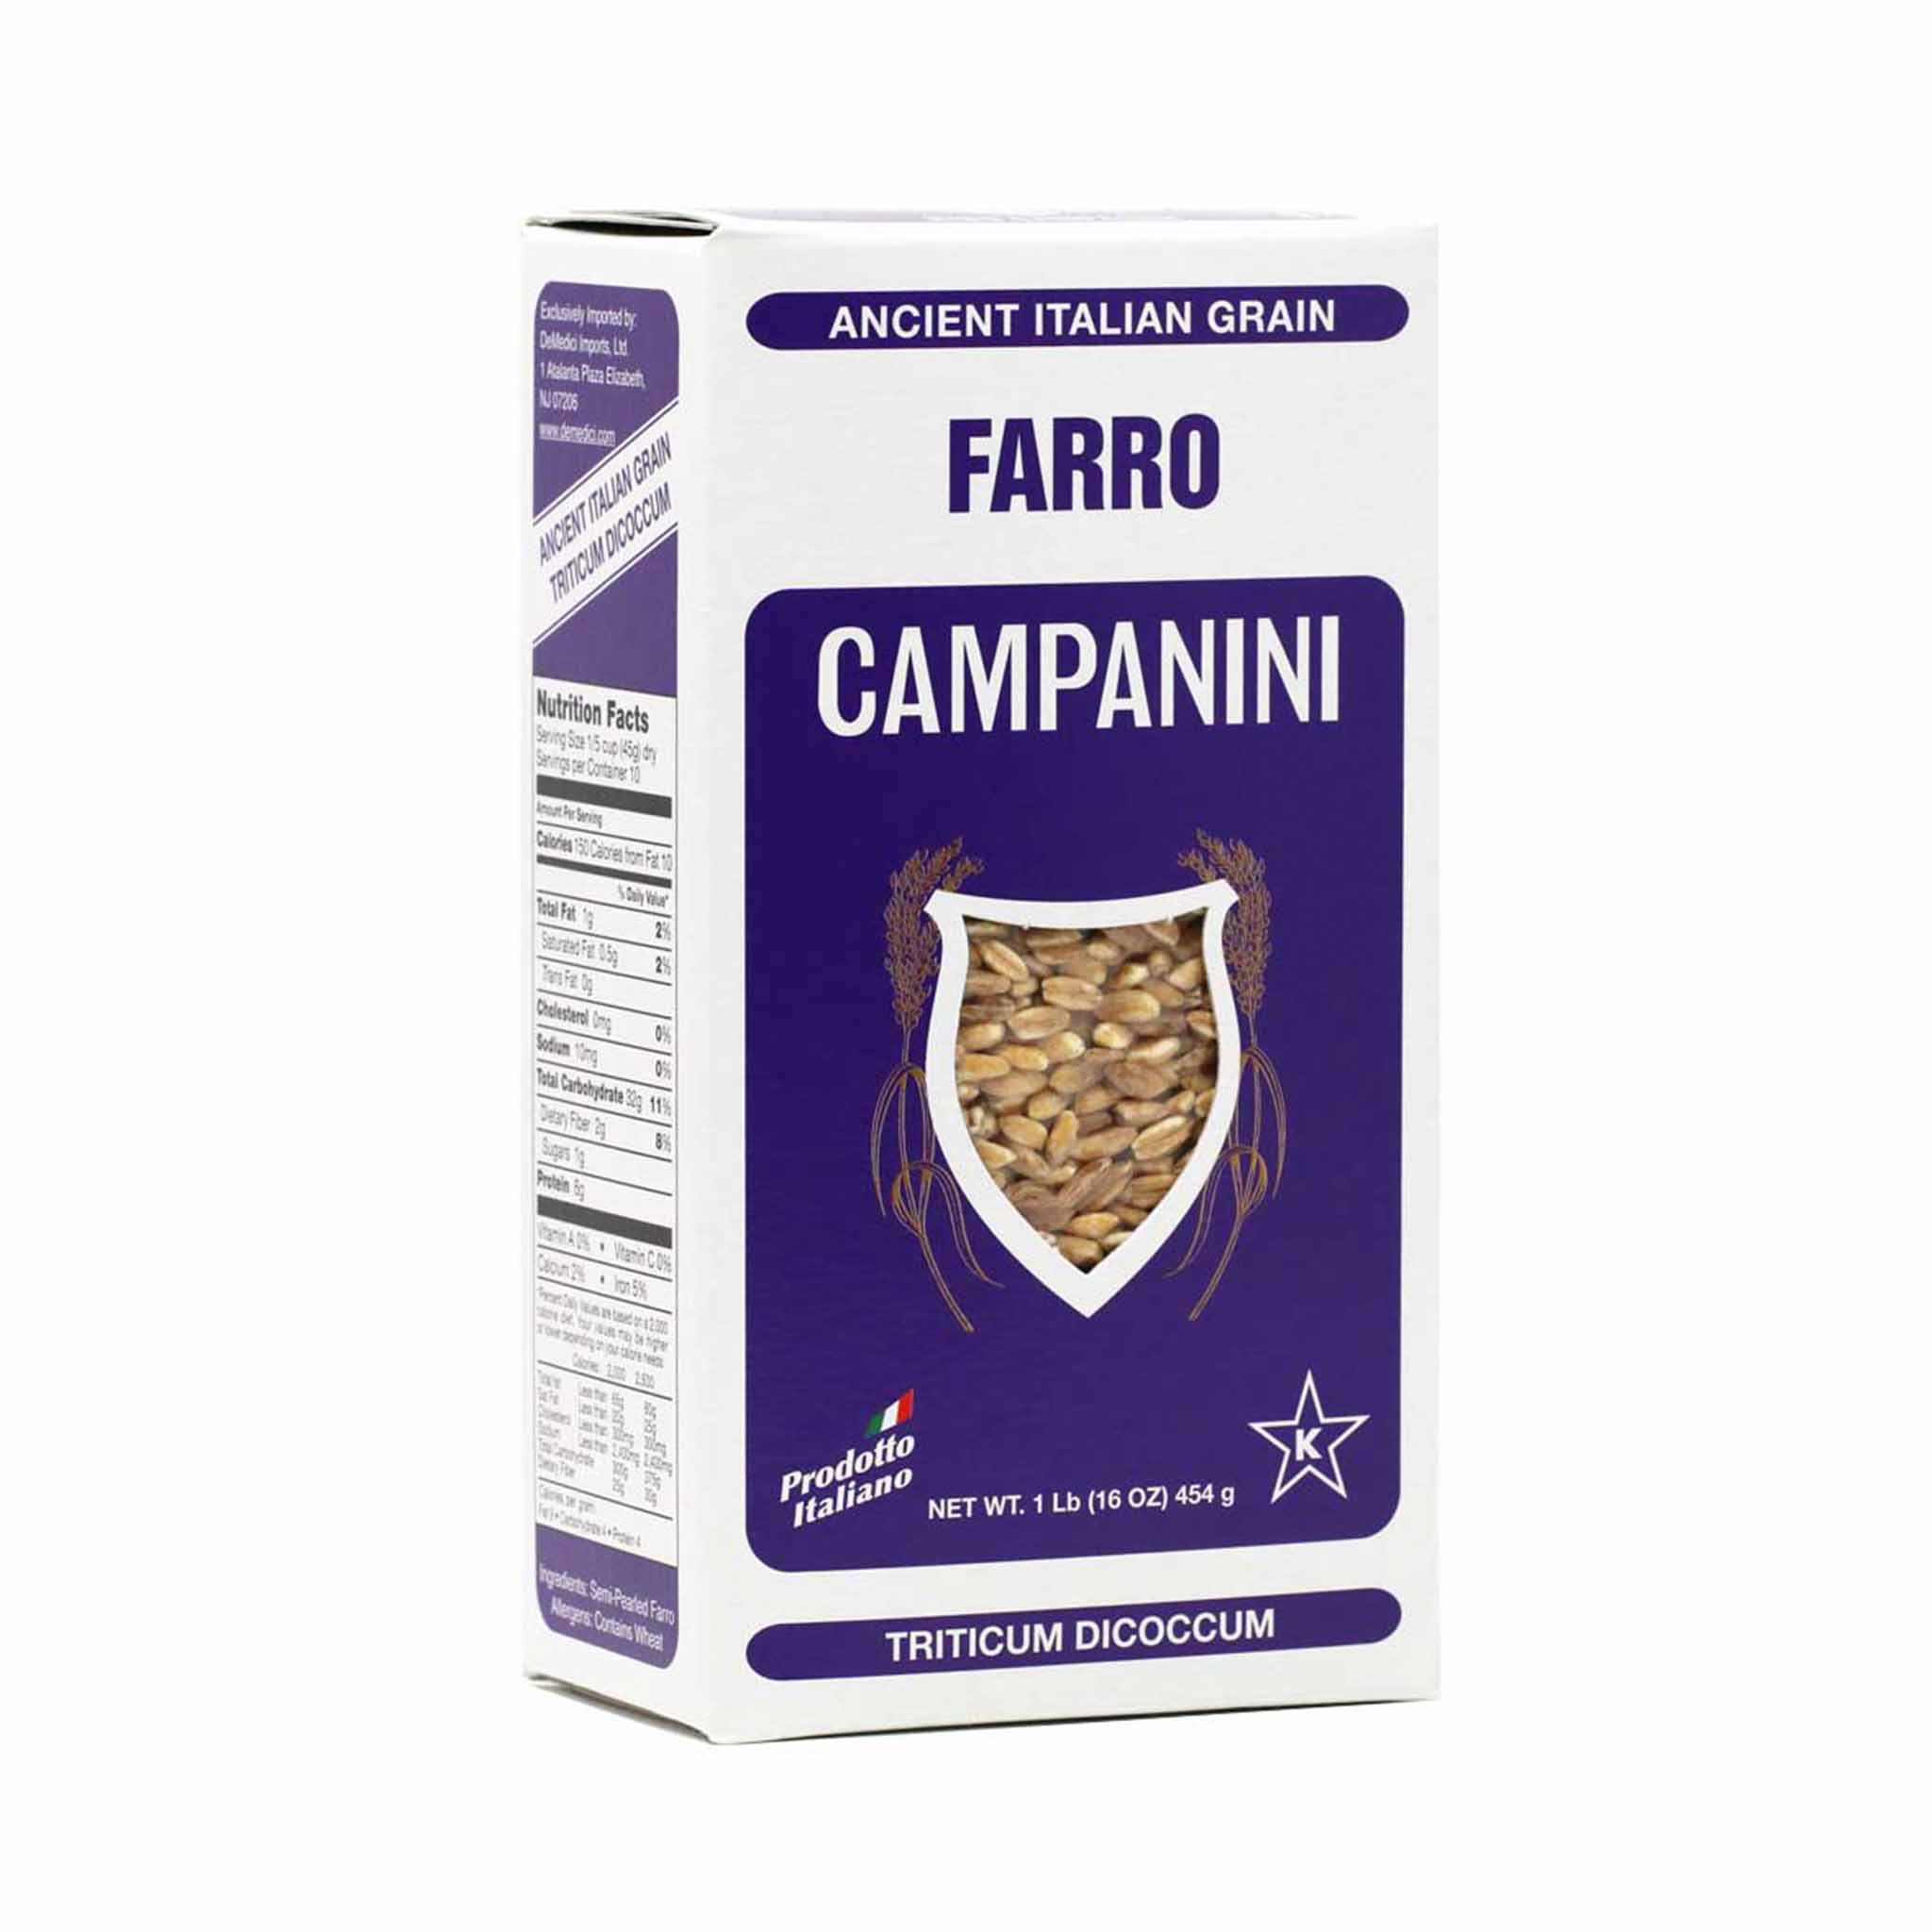 Campanini Farro Ancient Italian Grain